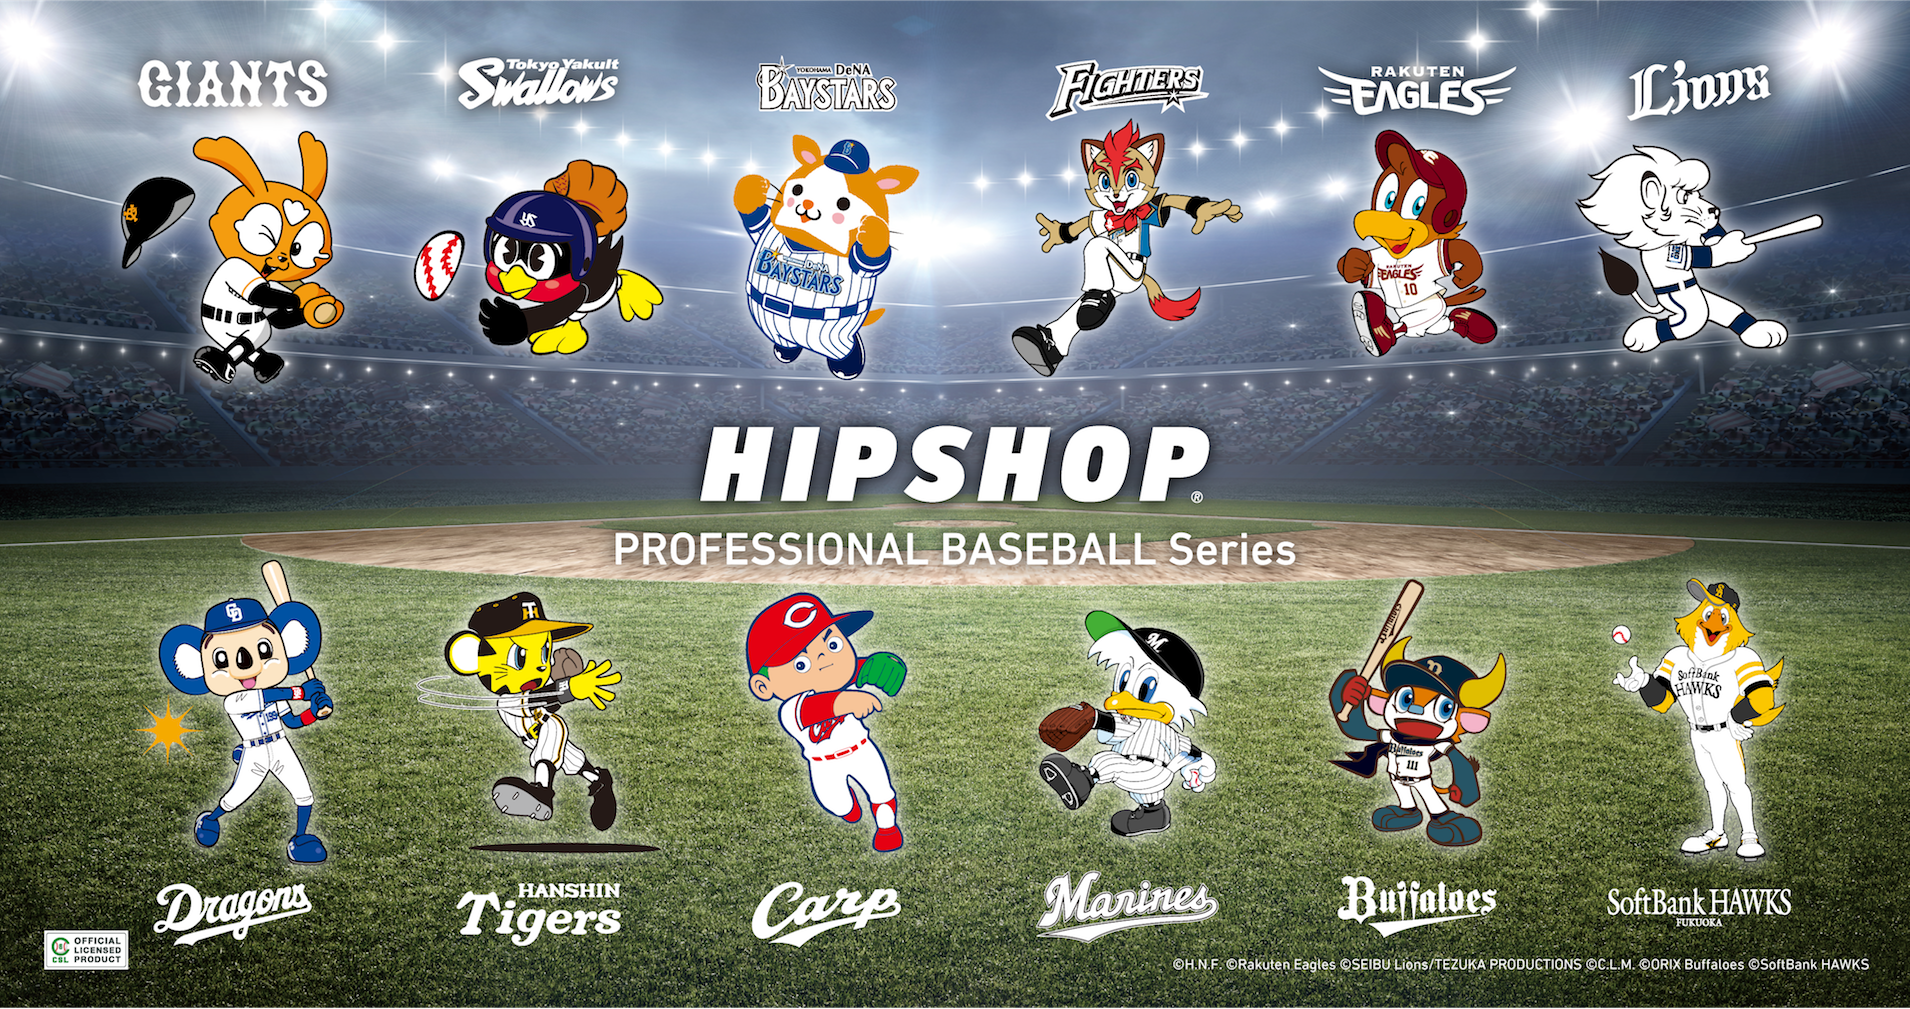 球春到来 21年プロ野球開幕 アンダーウェアブランド Hipshop ヒップショップ がプロ野球球団とコラボレーション 株式会社プロビジョンのプレスリリース